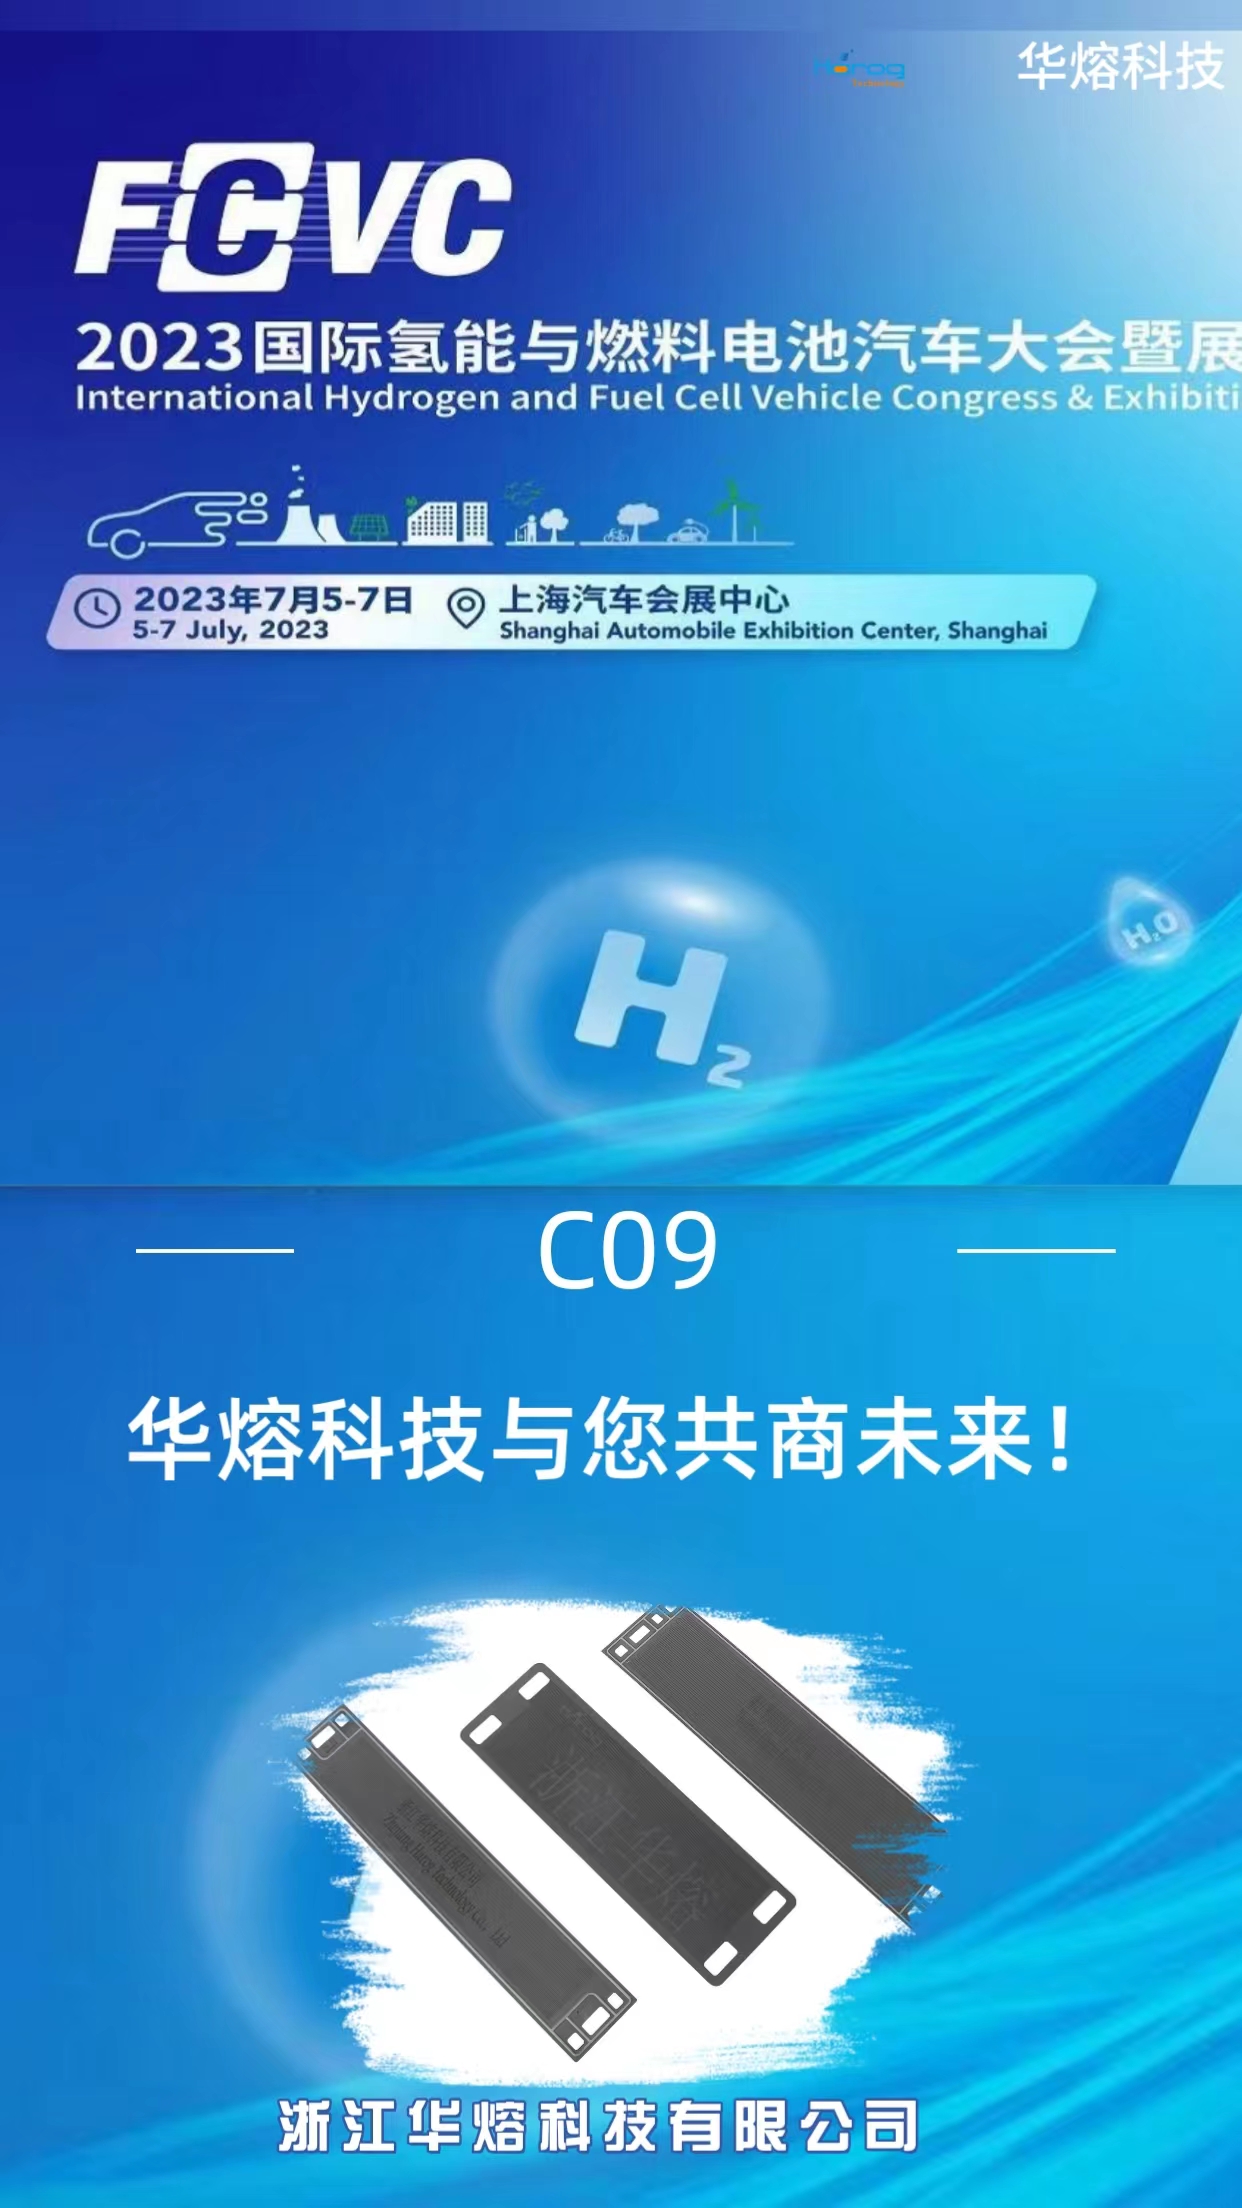 Meet Harog at FCVC 2023 Shanghai C09